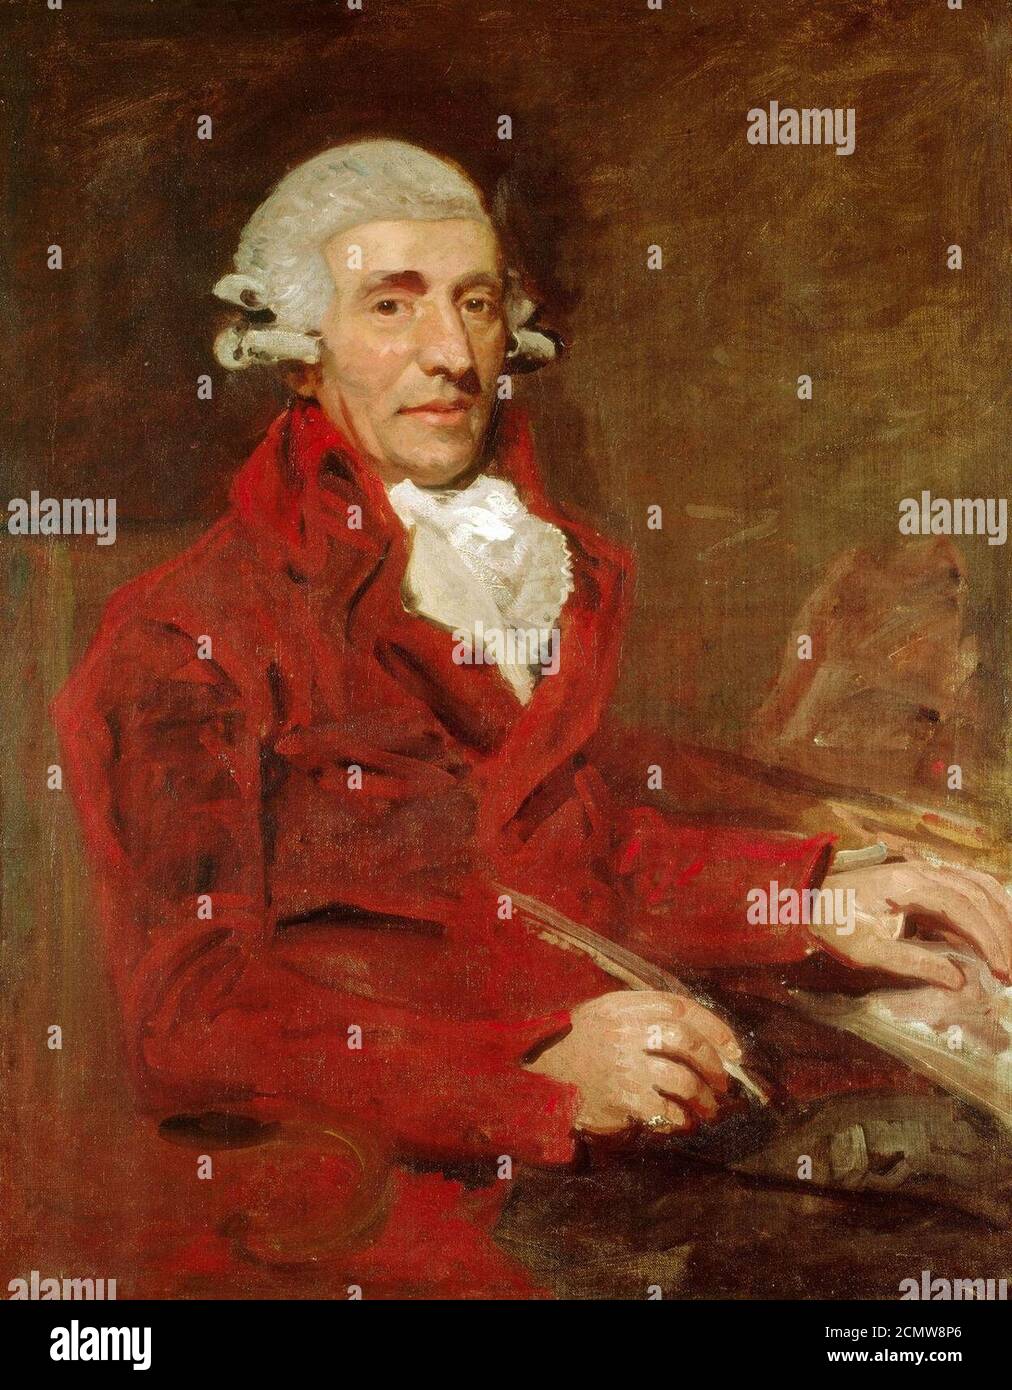 John Hoppner (1758-1810) - Franz Joseph Haydn (1732-1809) Foto Stock